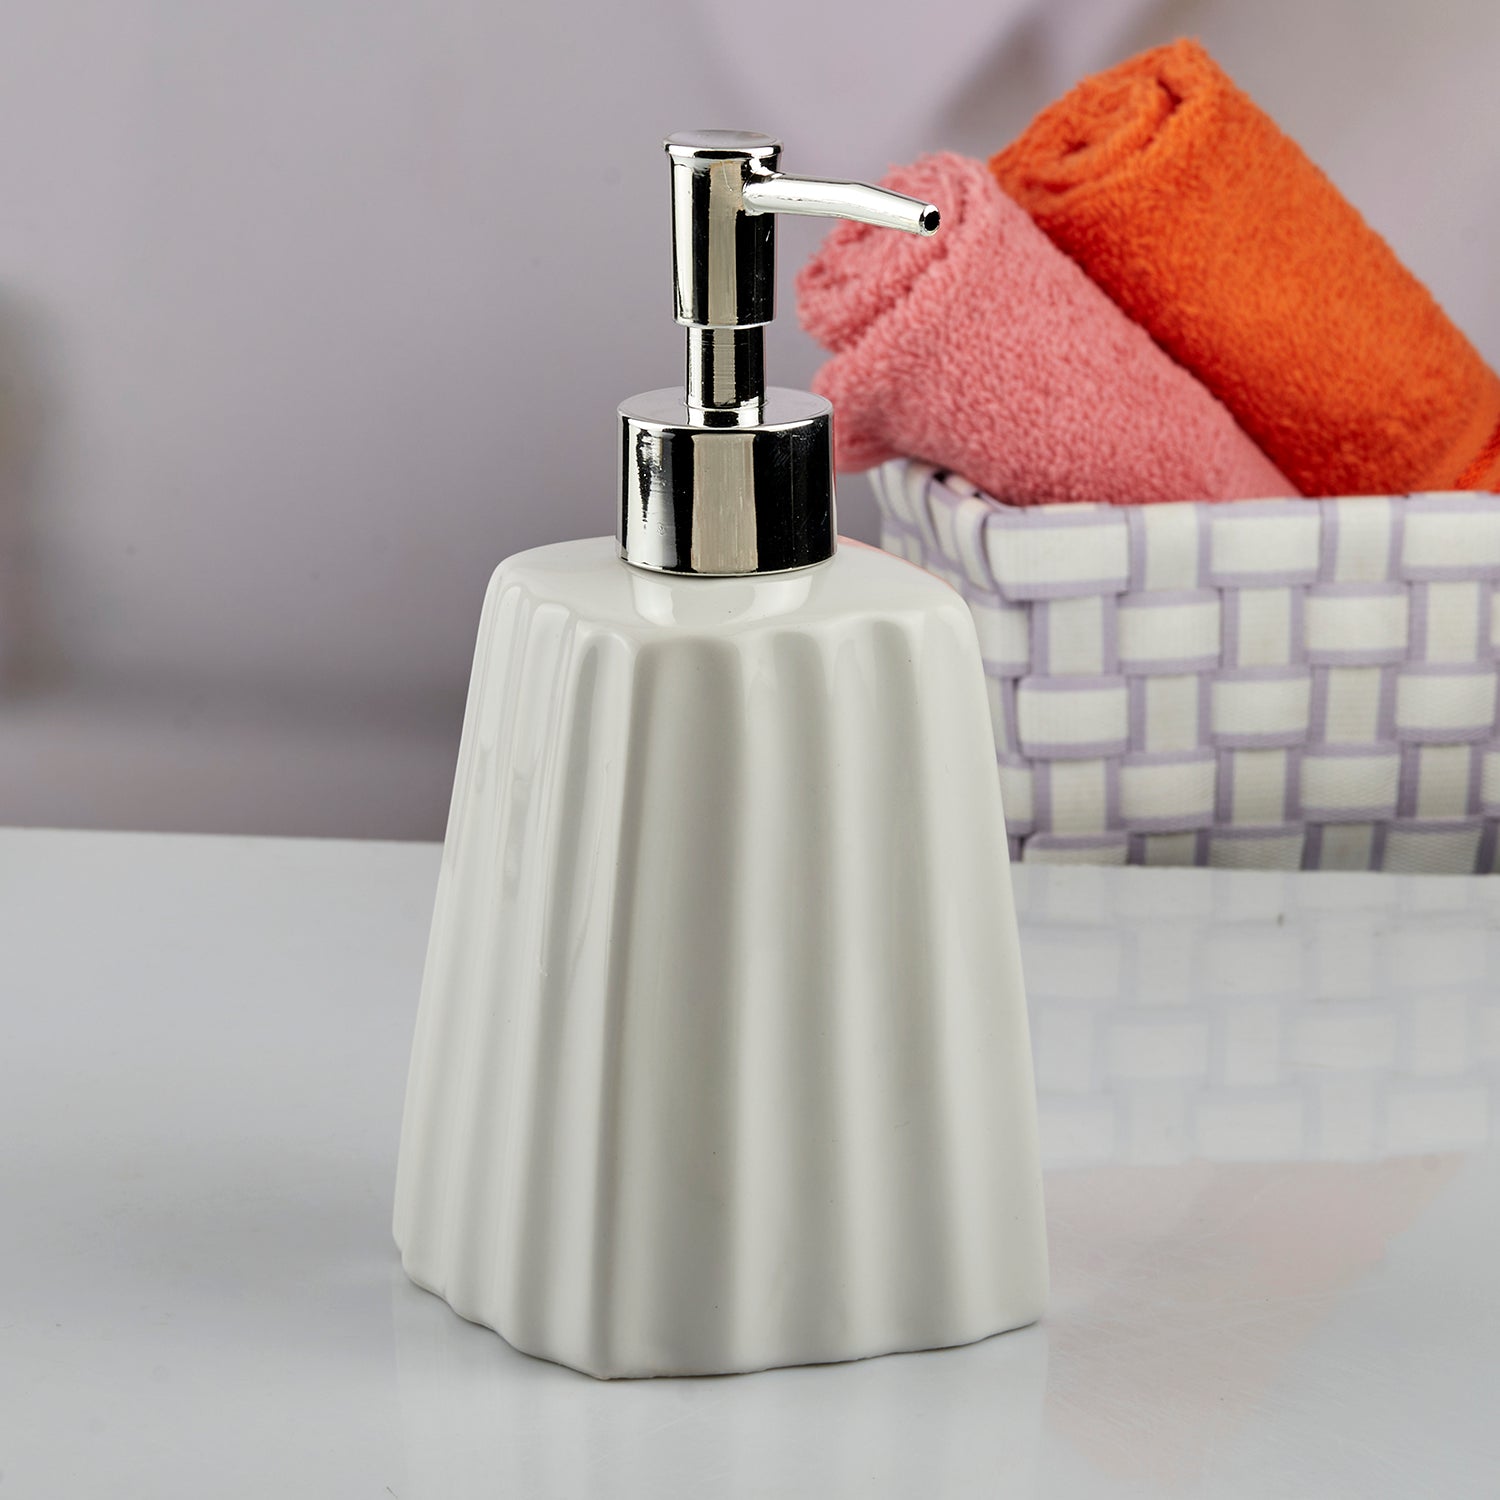 Ceramic Soap Dispenser liquid handwash pump for Bathroom, Set of 1, White (10593)